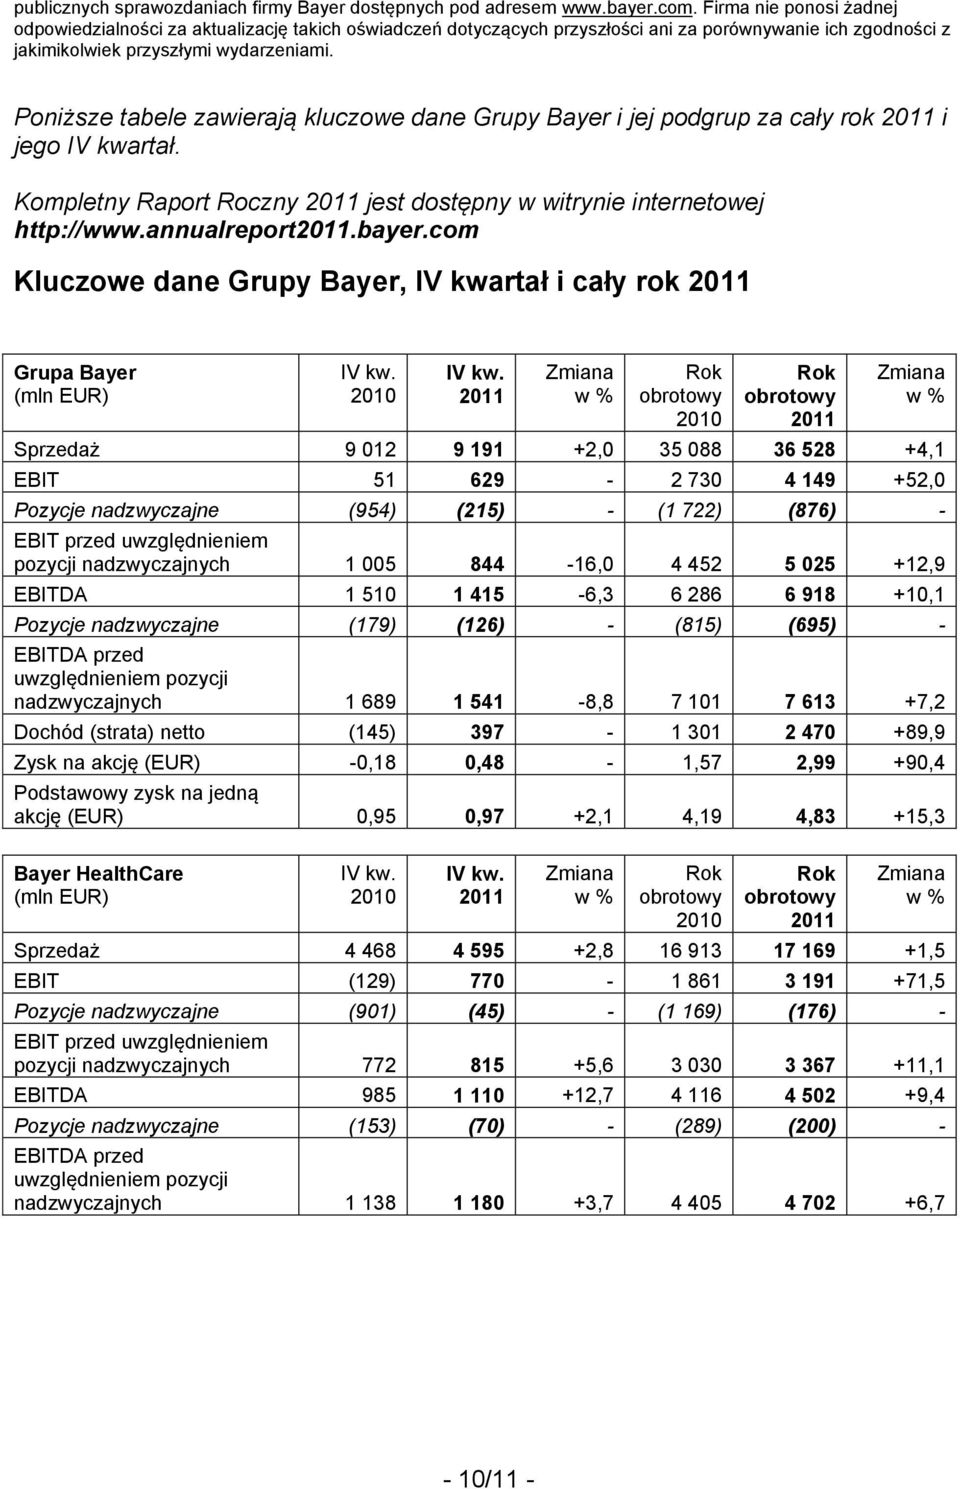 Poniższe tabele zawierają kluczowe dane Grupy Bayer i jej podgrup za cały rok i jego IV kwartał. Kompletny Raport Roczny jest dostępny w witrynie internetowej http://www.annualreport.bayer.